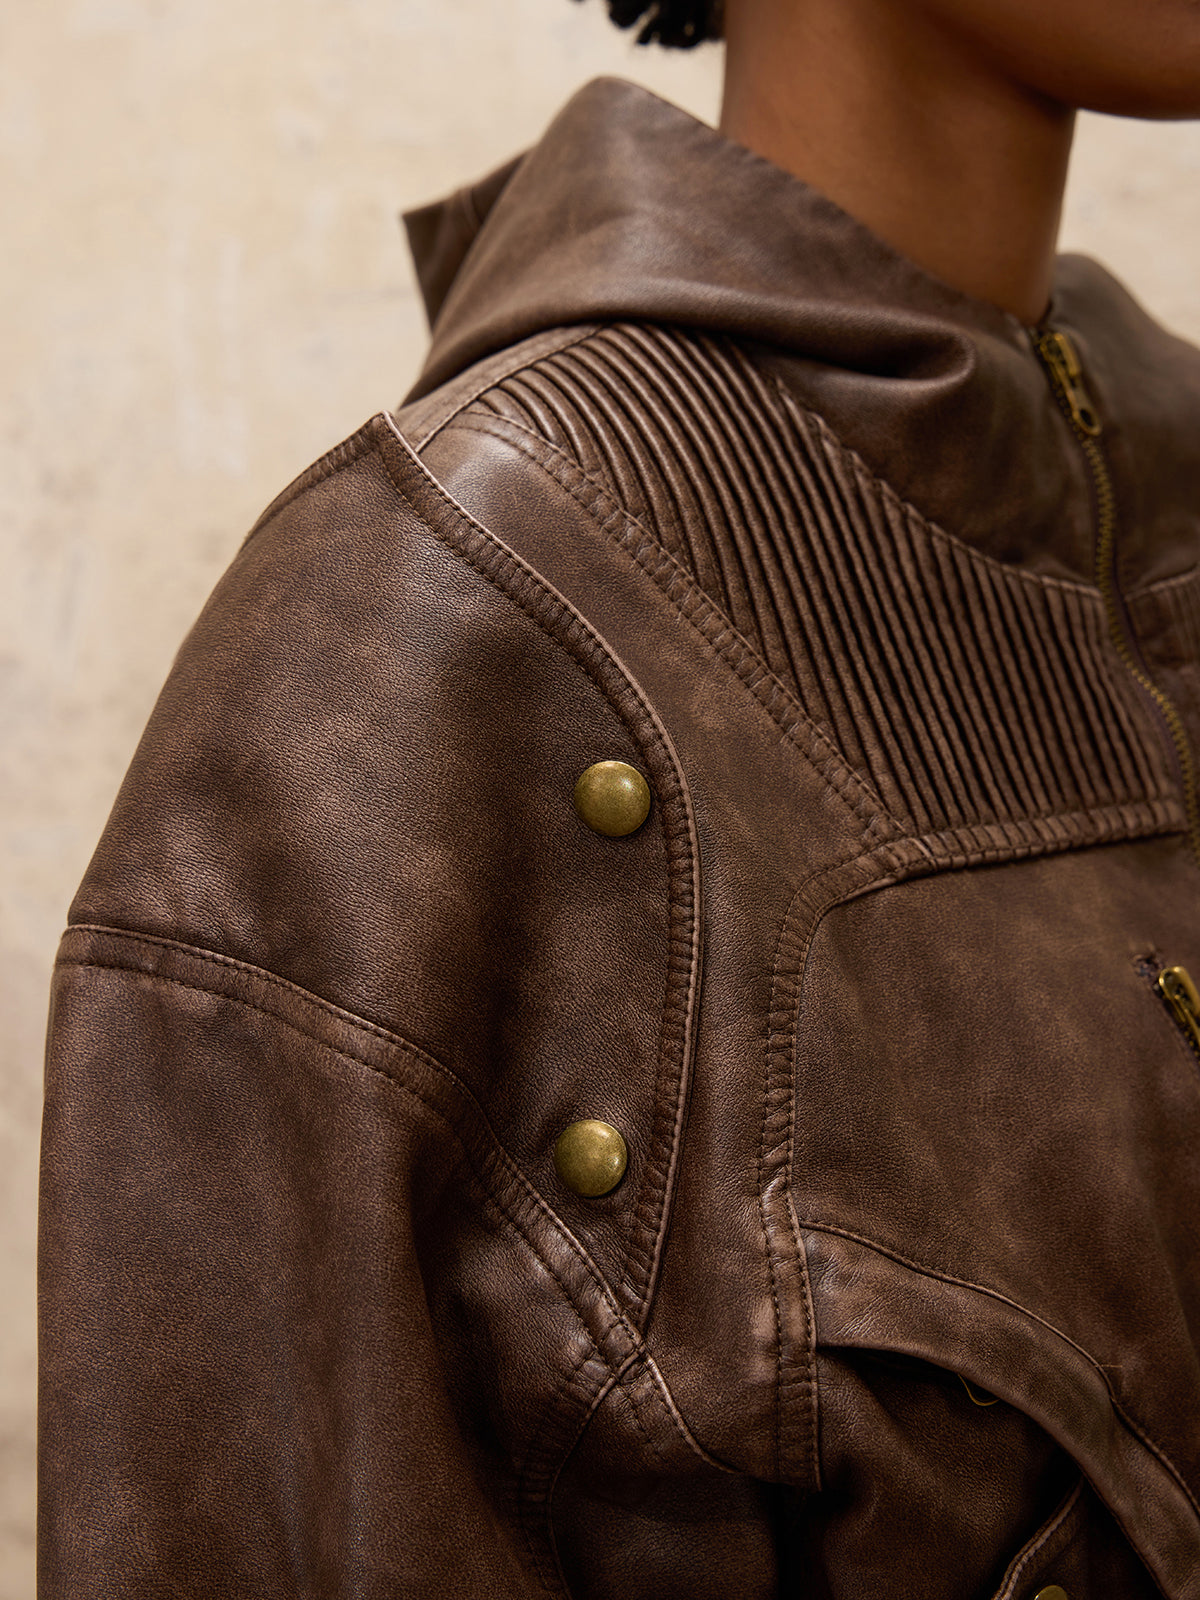 Personsoul Retro Blouson Leather Jacket